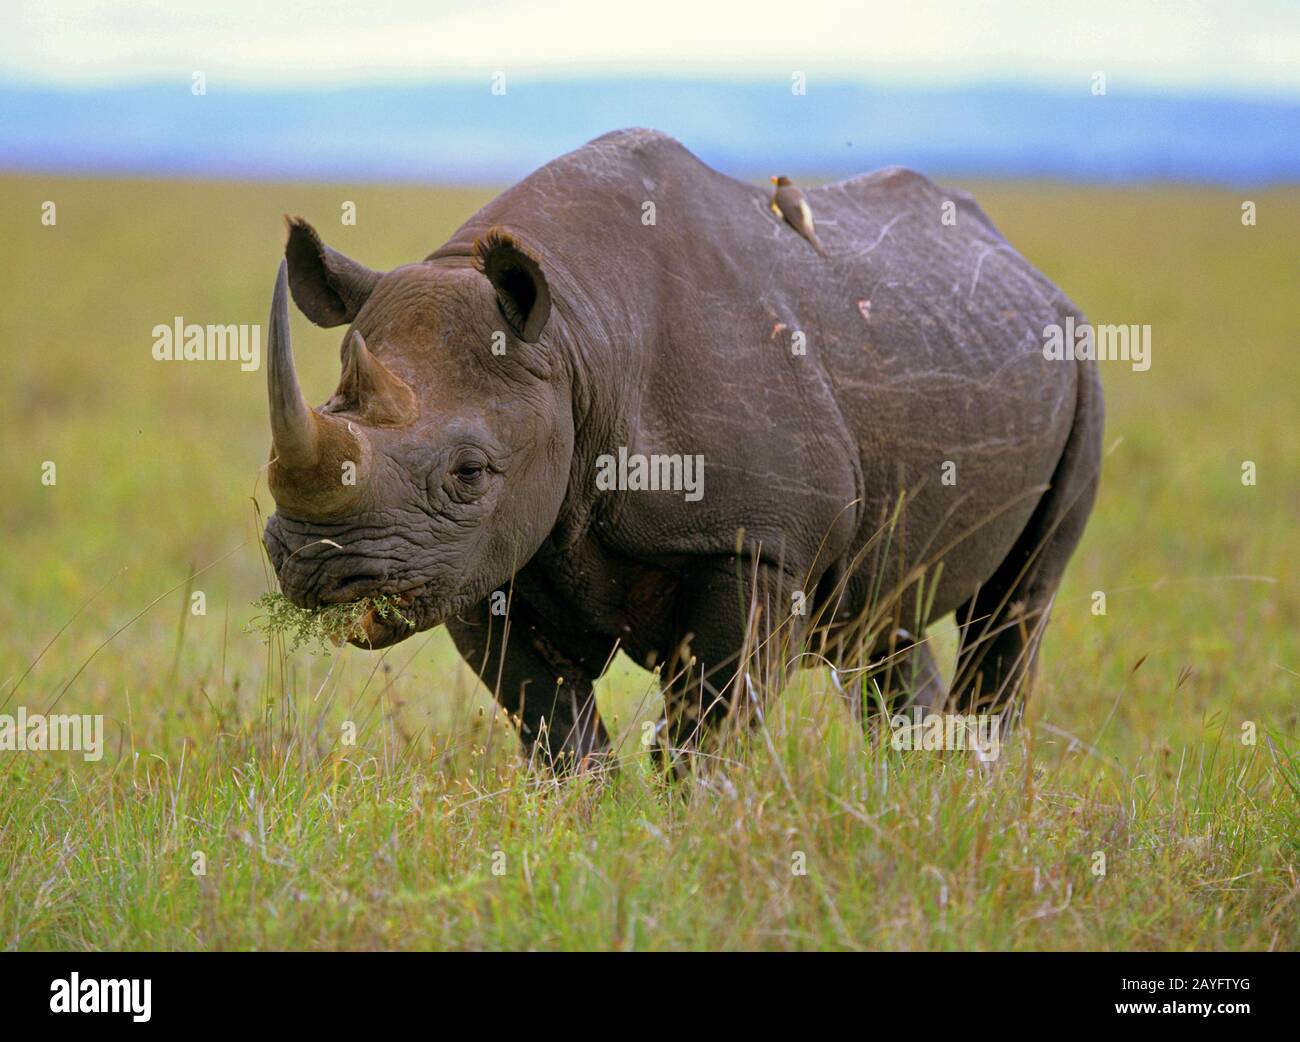 Rhinocéros noirs, rhinocéros accro-lifés, rhinocéros de navigation (Diceros bicornis), se tient manger dans la savane, Afrique Banque D'Images